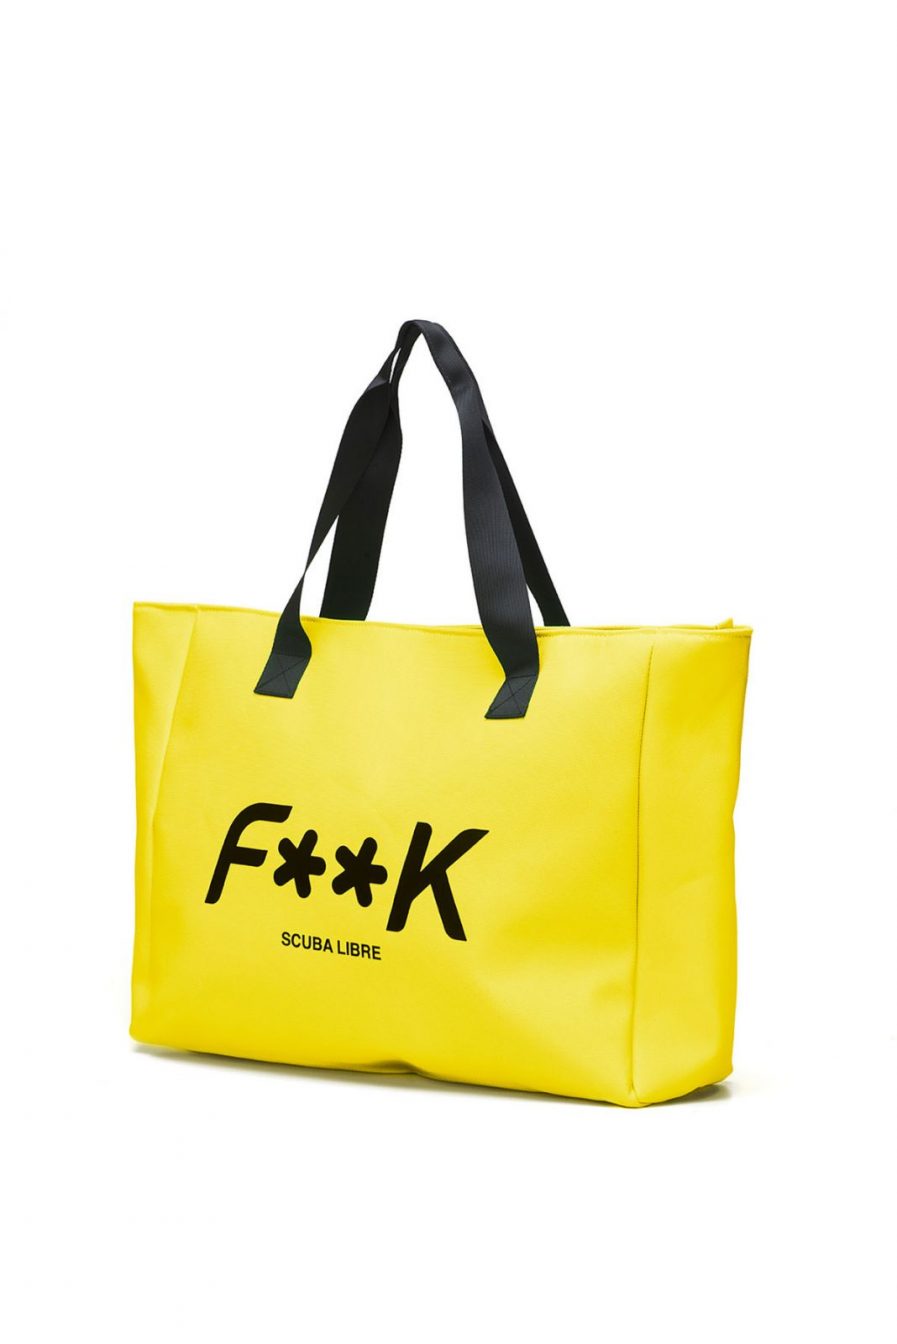 F**K borsa mare logo gialla Tersicore